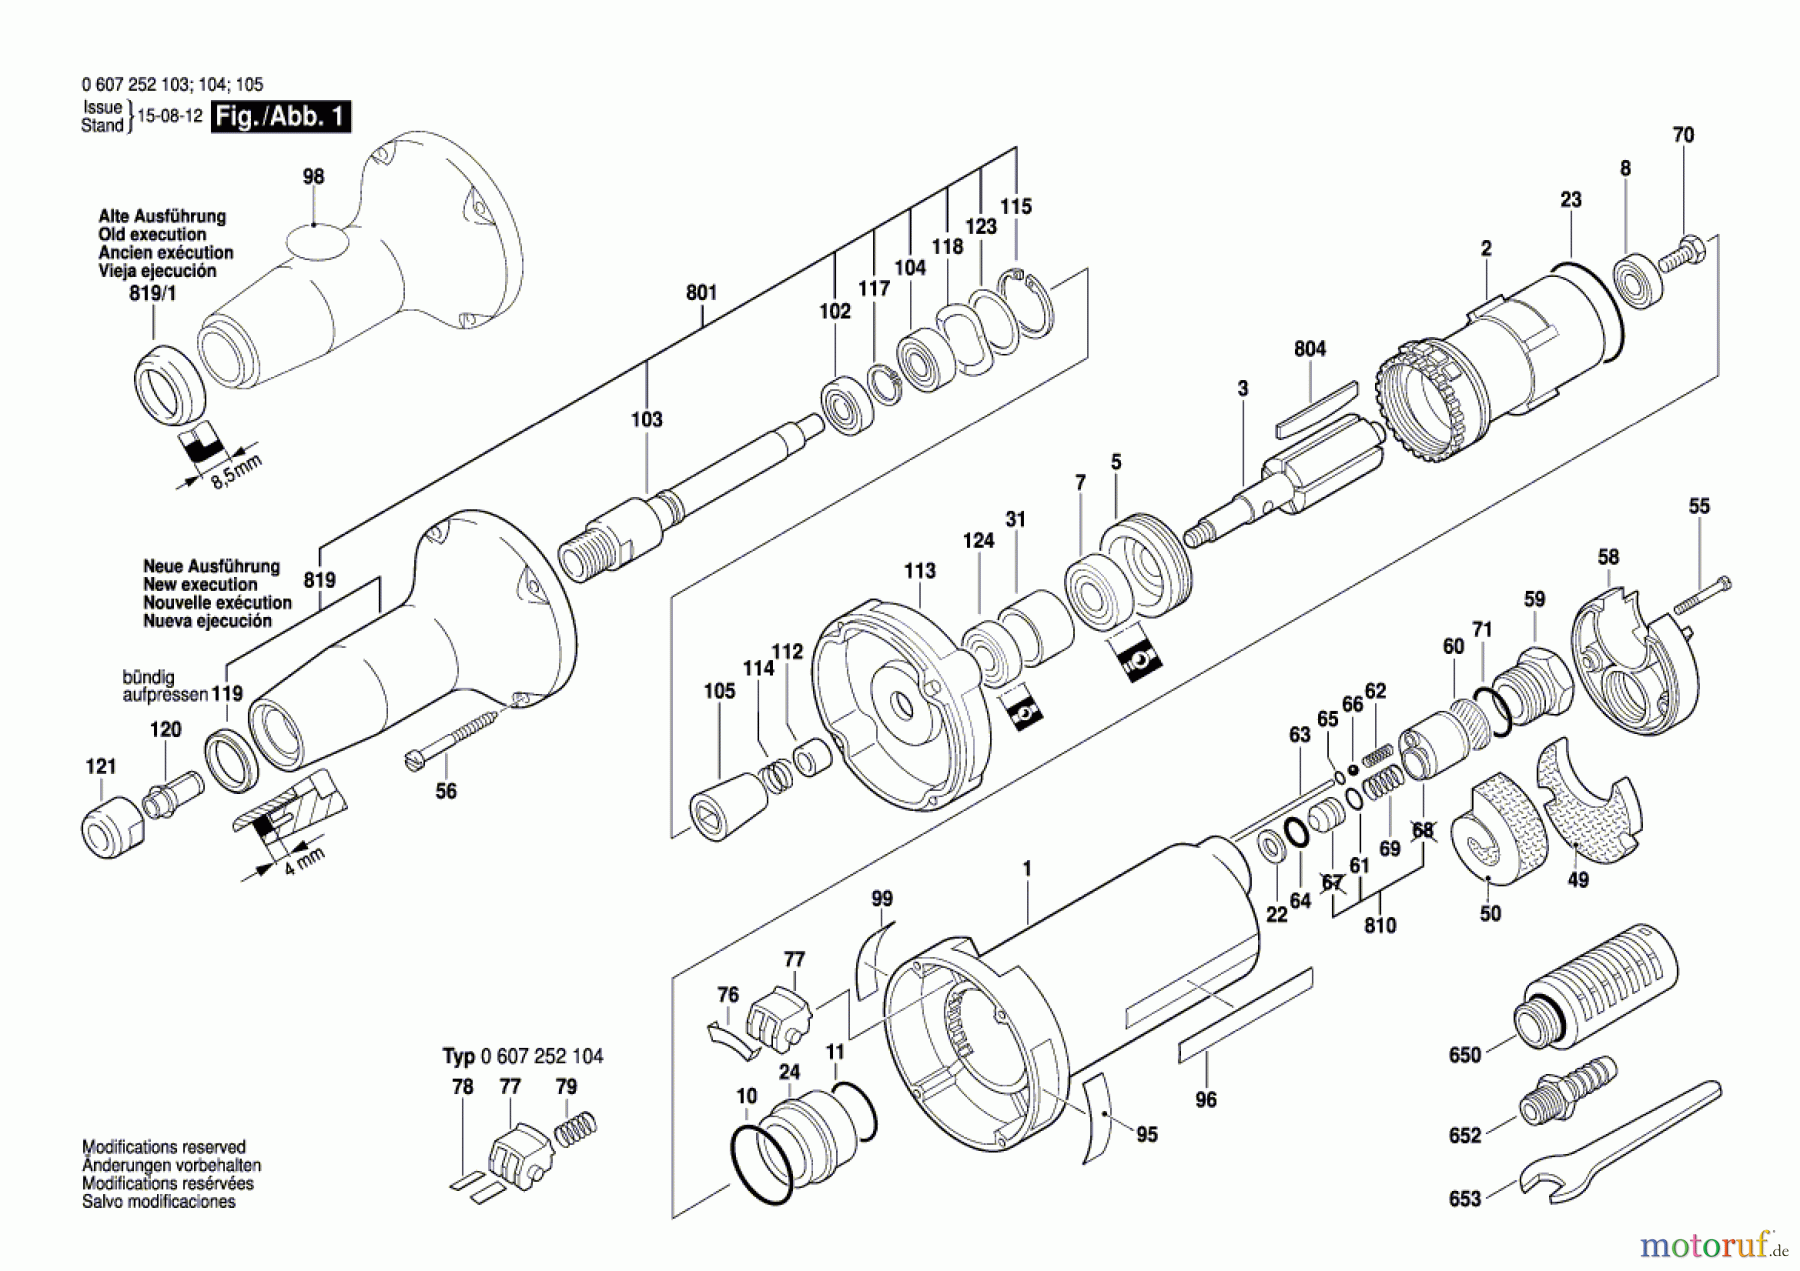  Bosch Werkzeug Pw-Geradschleifer 550 WATT-SERIE Seite 1